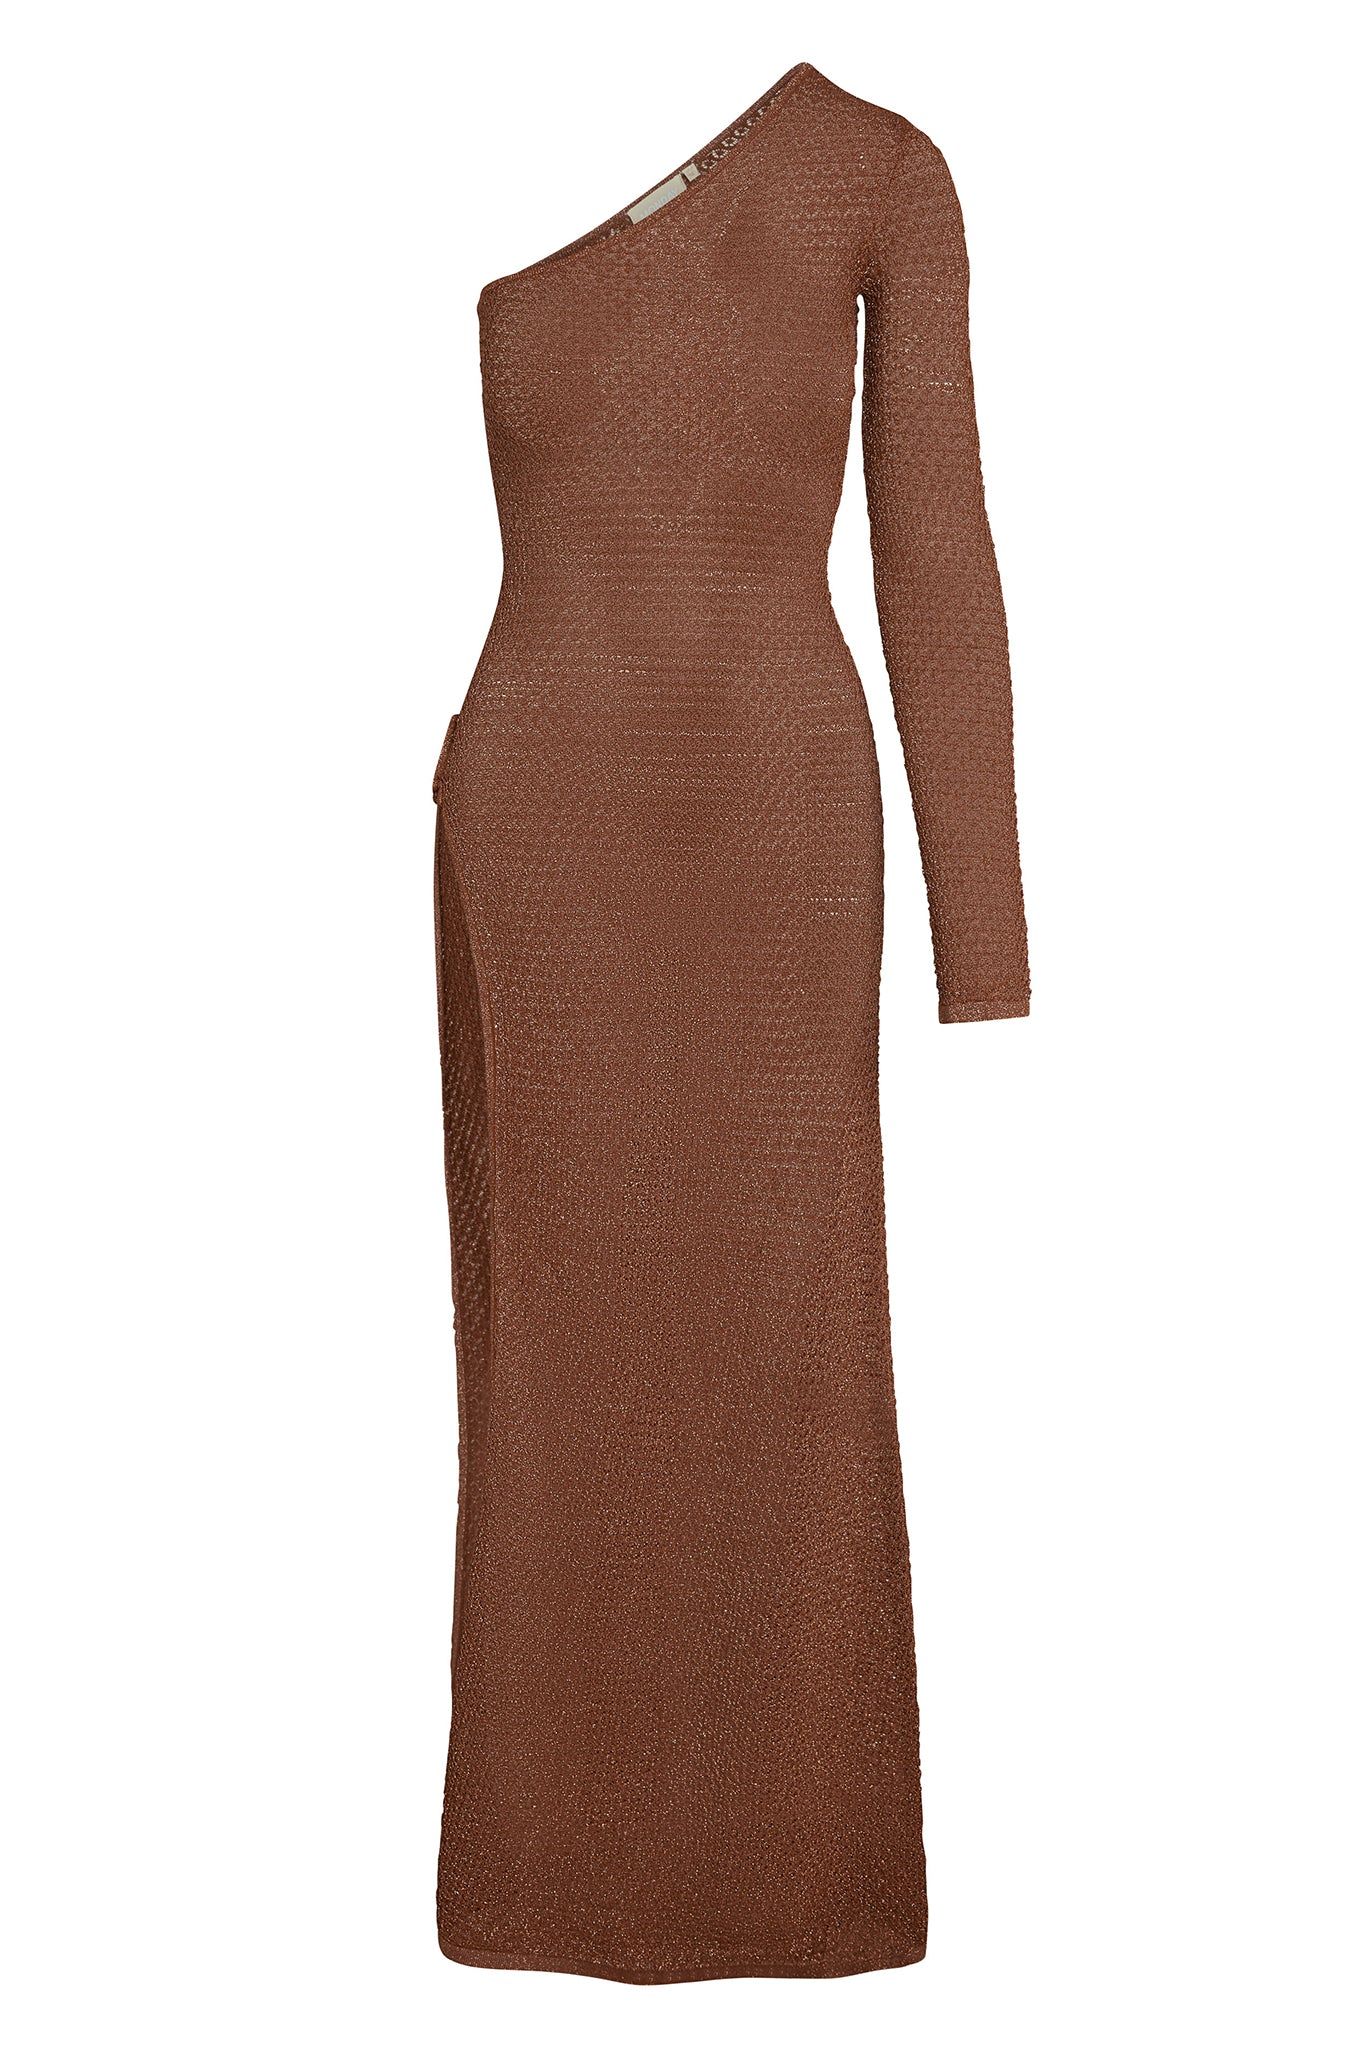 Palermo Dress - Bronze Lurex Lace Crochet | Monday Swimwear